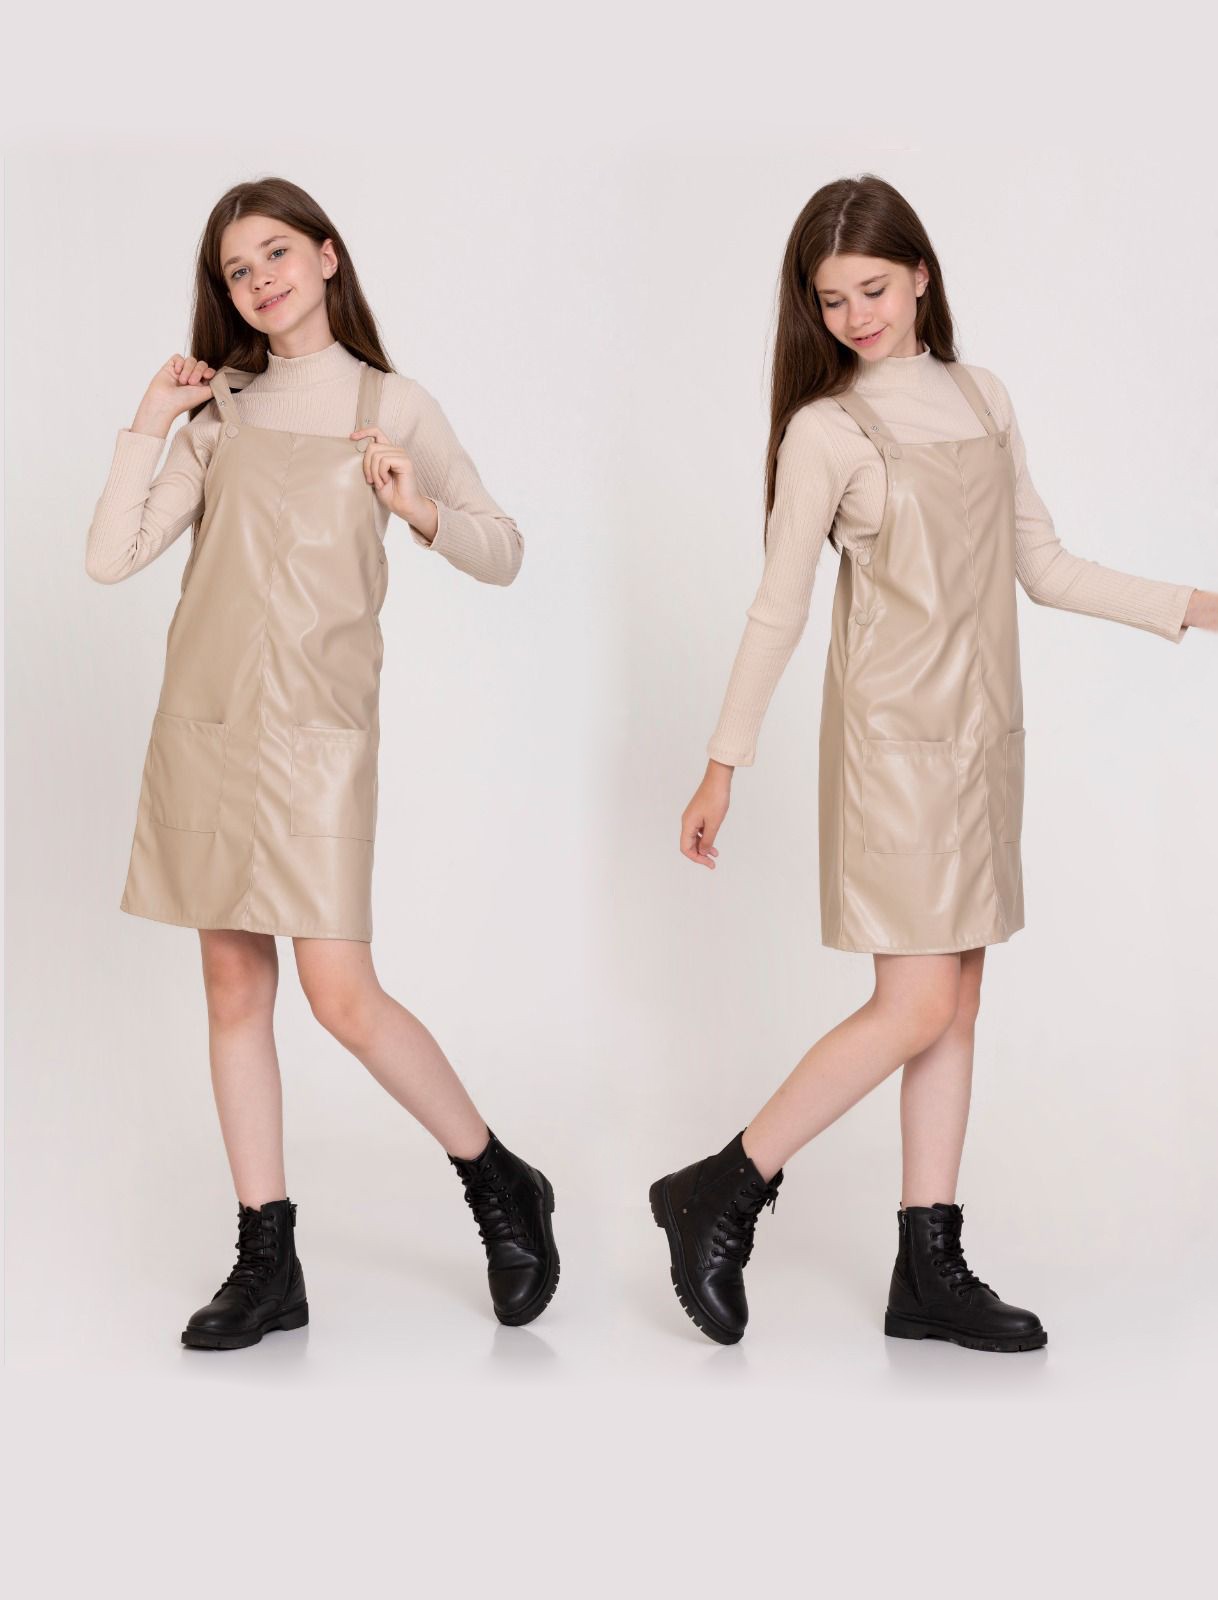 Basıc Deri Çıtçıtlı Elbise 23141 - Krem